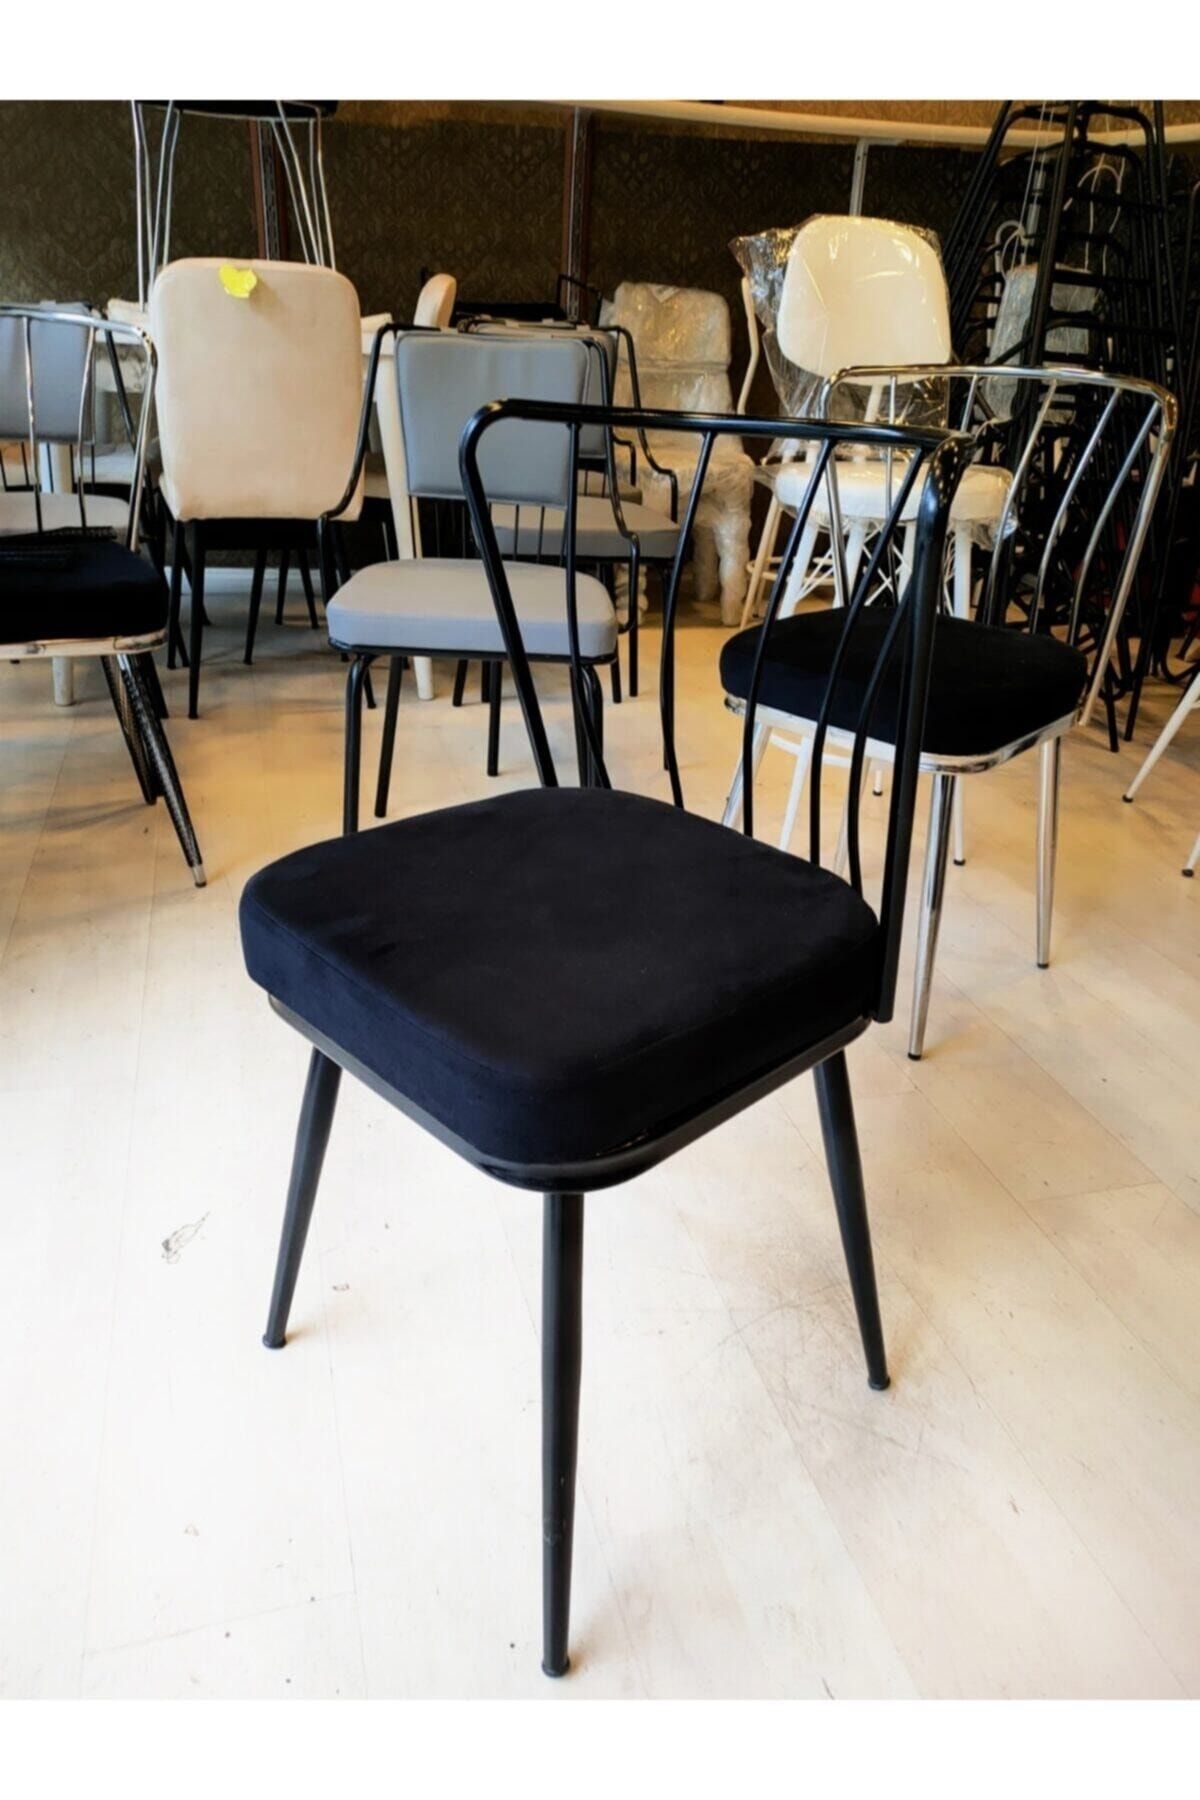 Sandalye Shop Yeni)ay Sandalye 45 Cm(görsel Sandalyeshop Satıcısına Ait Grandhome’a Değil.satıcı Seçimine Dikkat